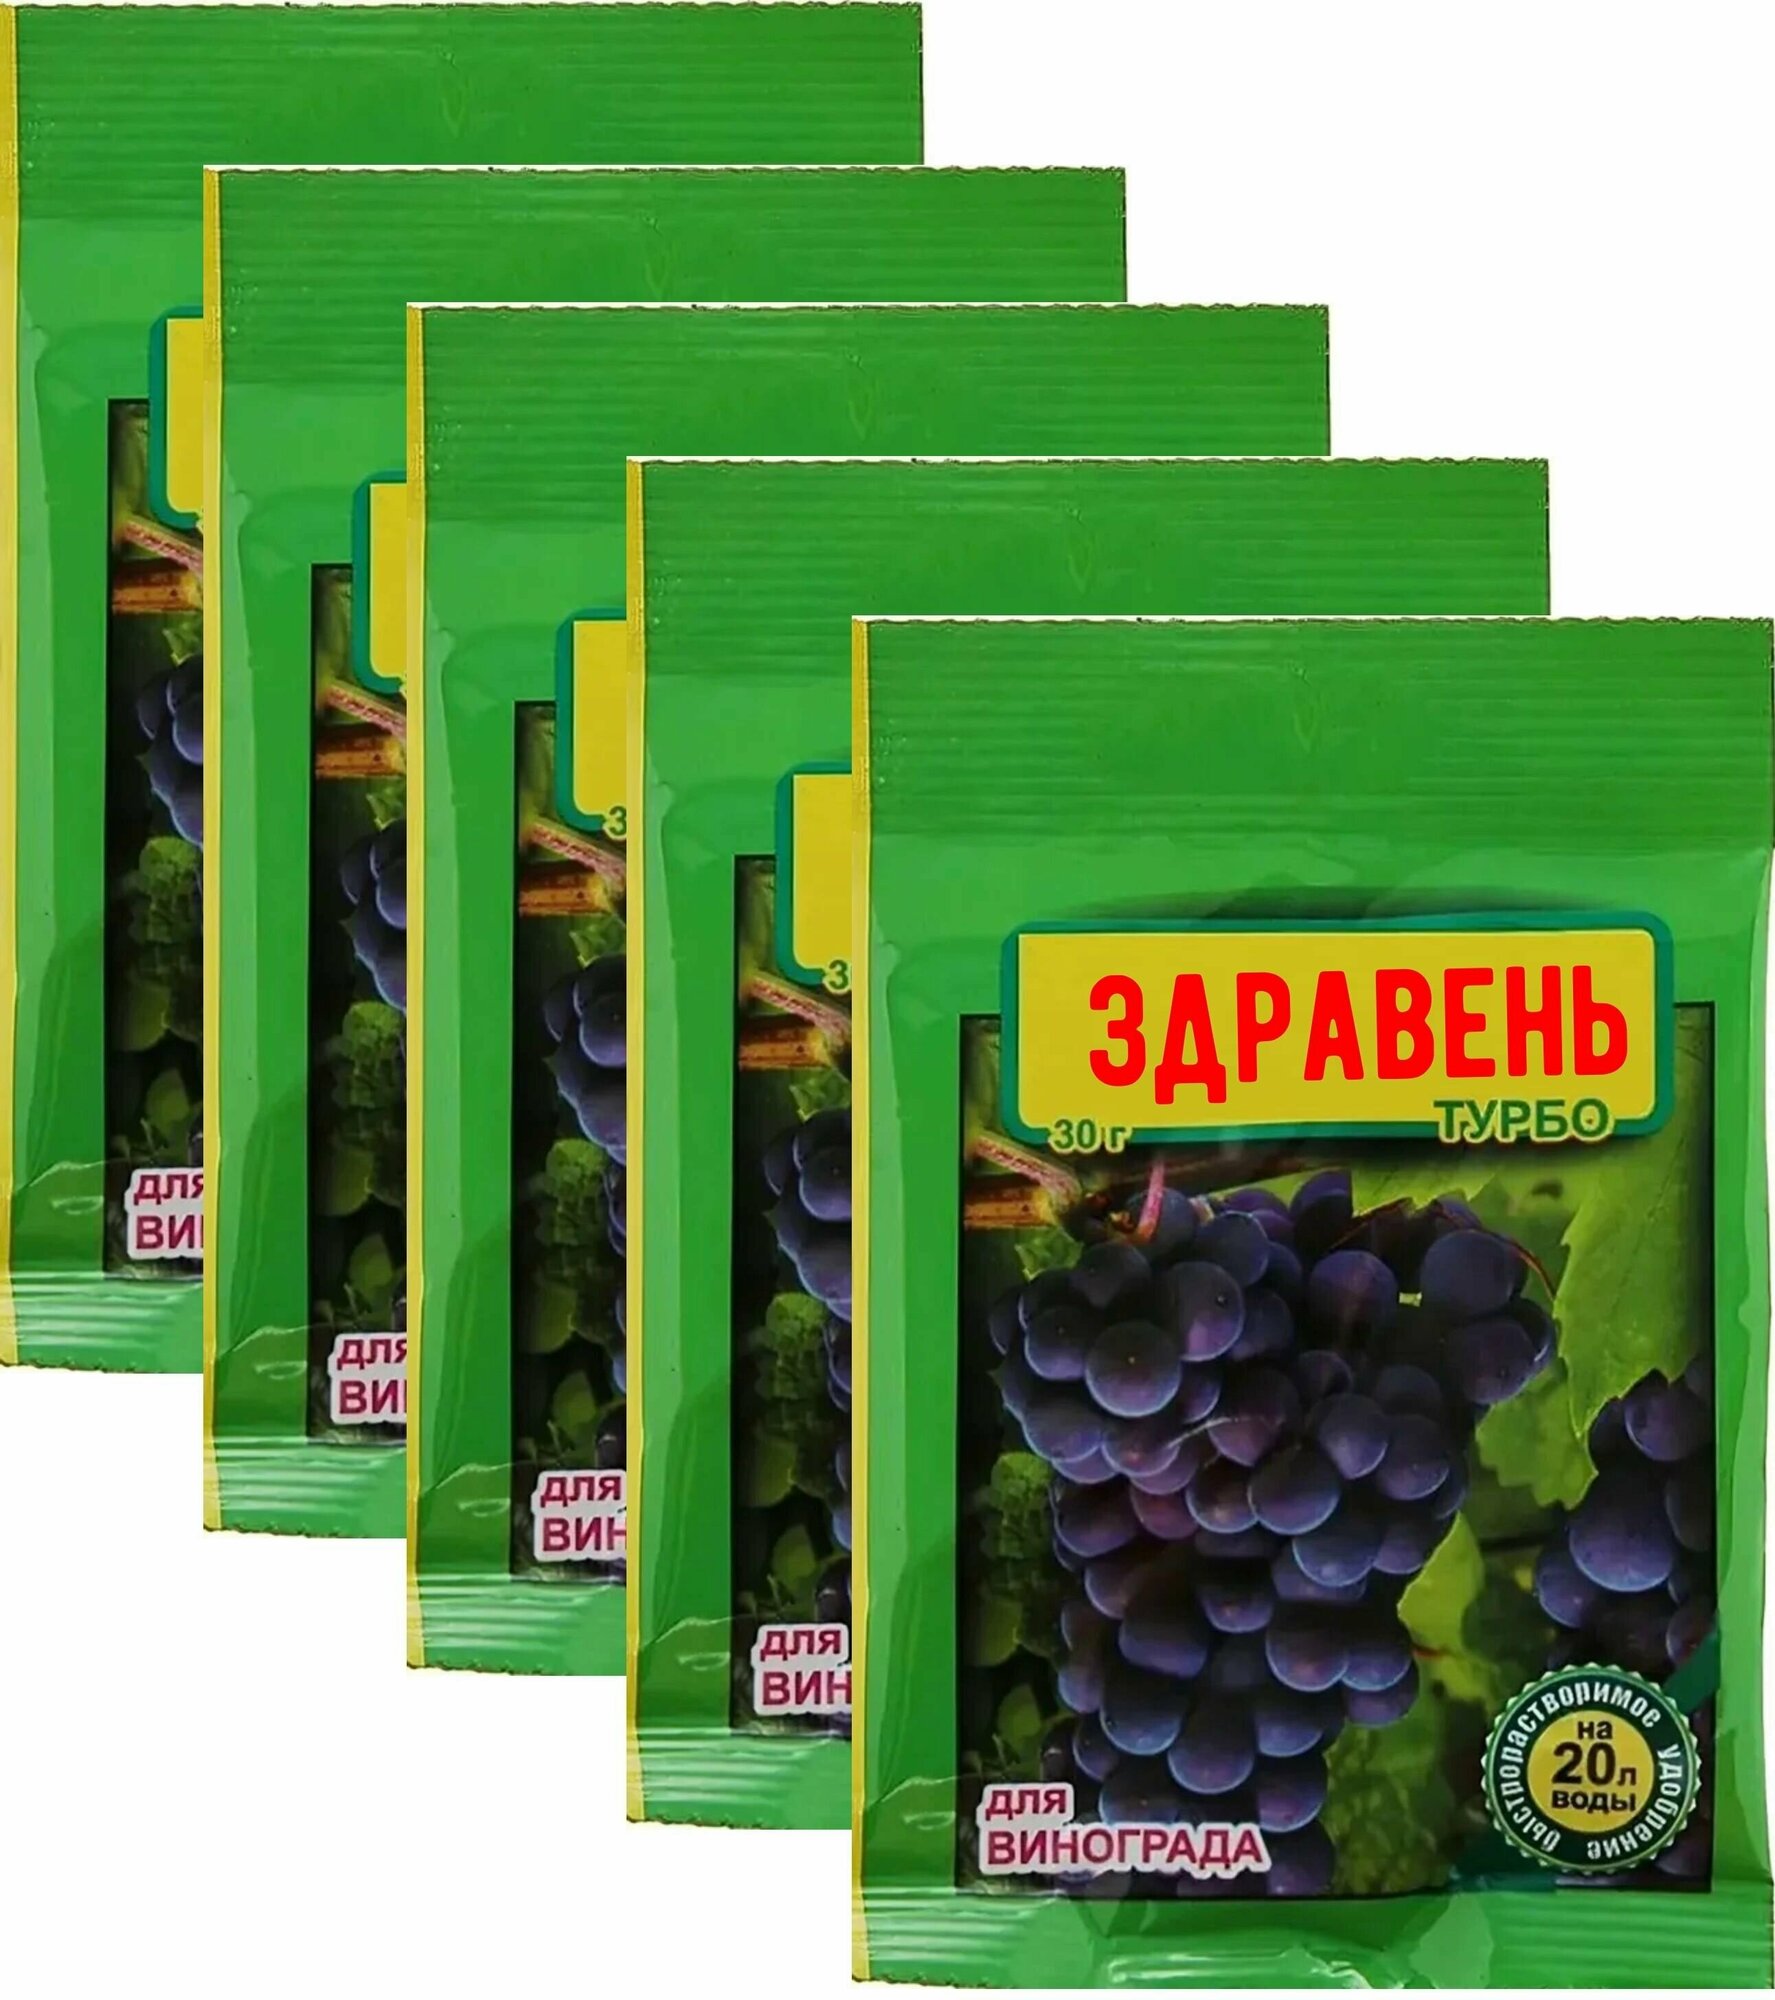 Комплексное удобрение Здравень турбо для винограда, концентрат, 5 шт по 30 г